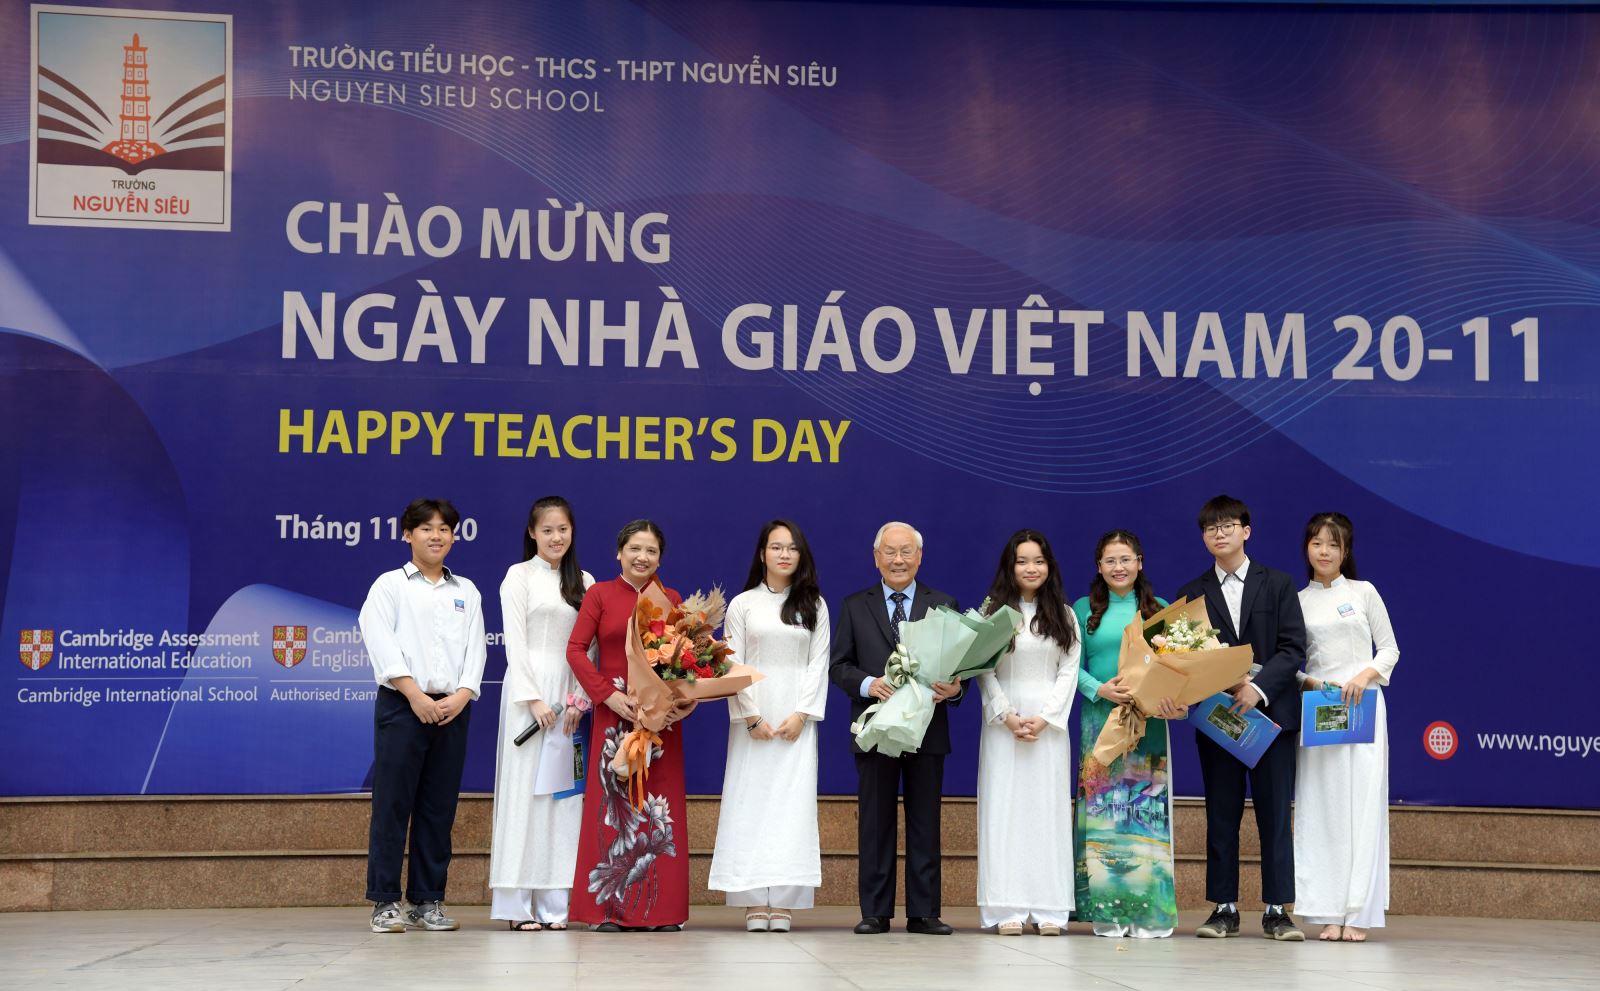 Nguyễn Siêu School (Hanoi, Vietnam) 20/11, tôn vinh